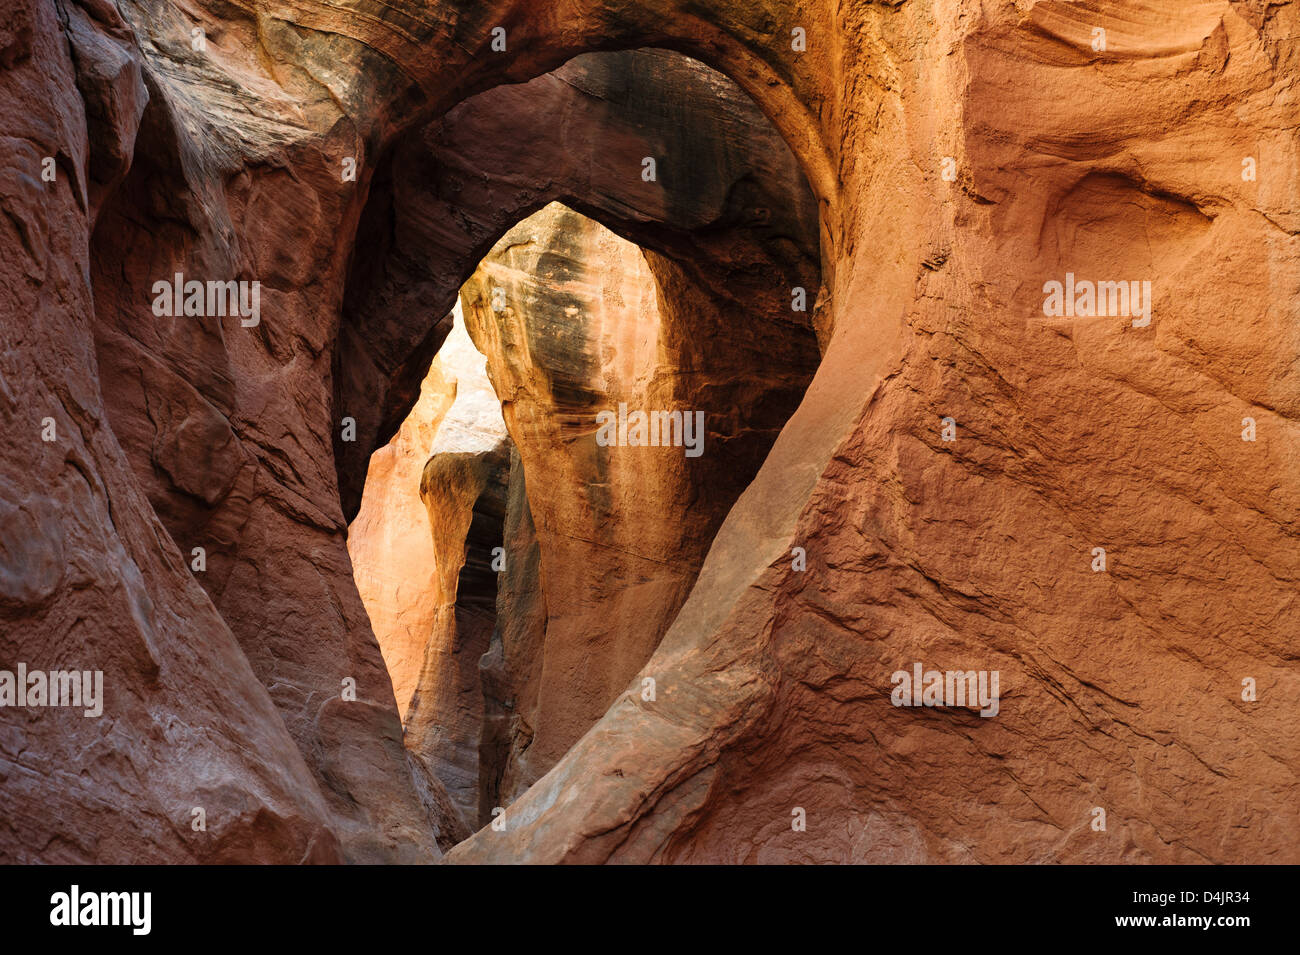 Passaruota interno peek-a-boo Canyon Slot in corrispondenza del foro in una roccia strada in grande scala monumento nazionale, Utah, Stati Uniti d'America Foto Stock